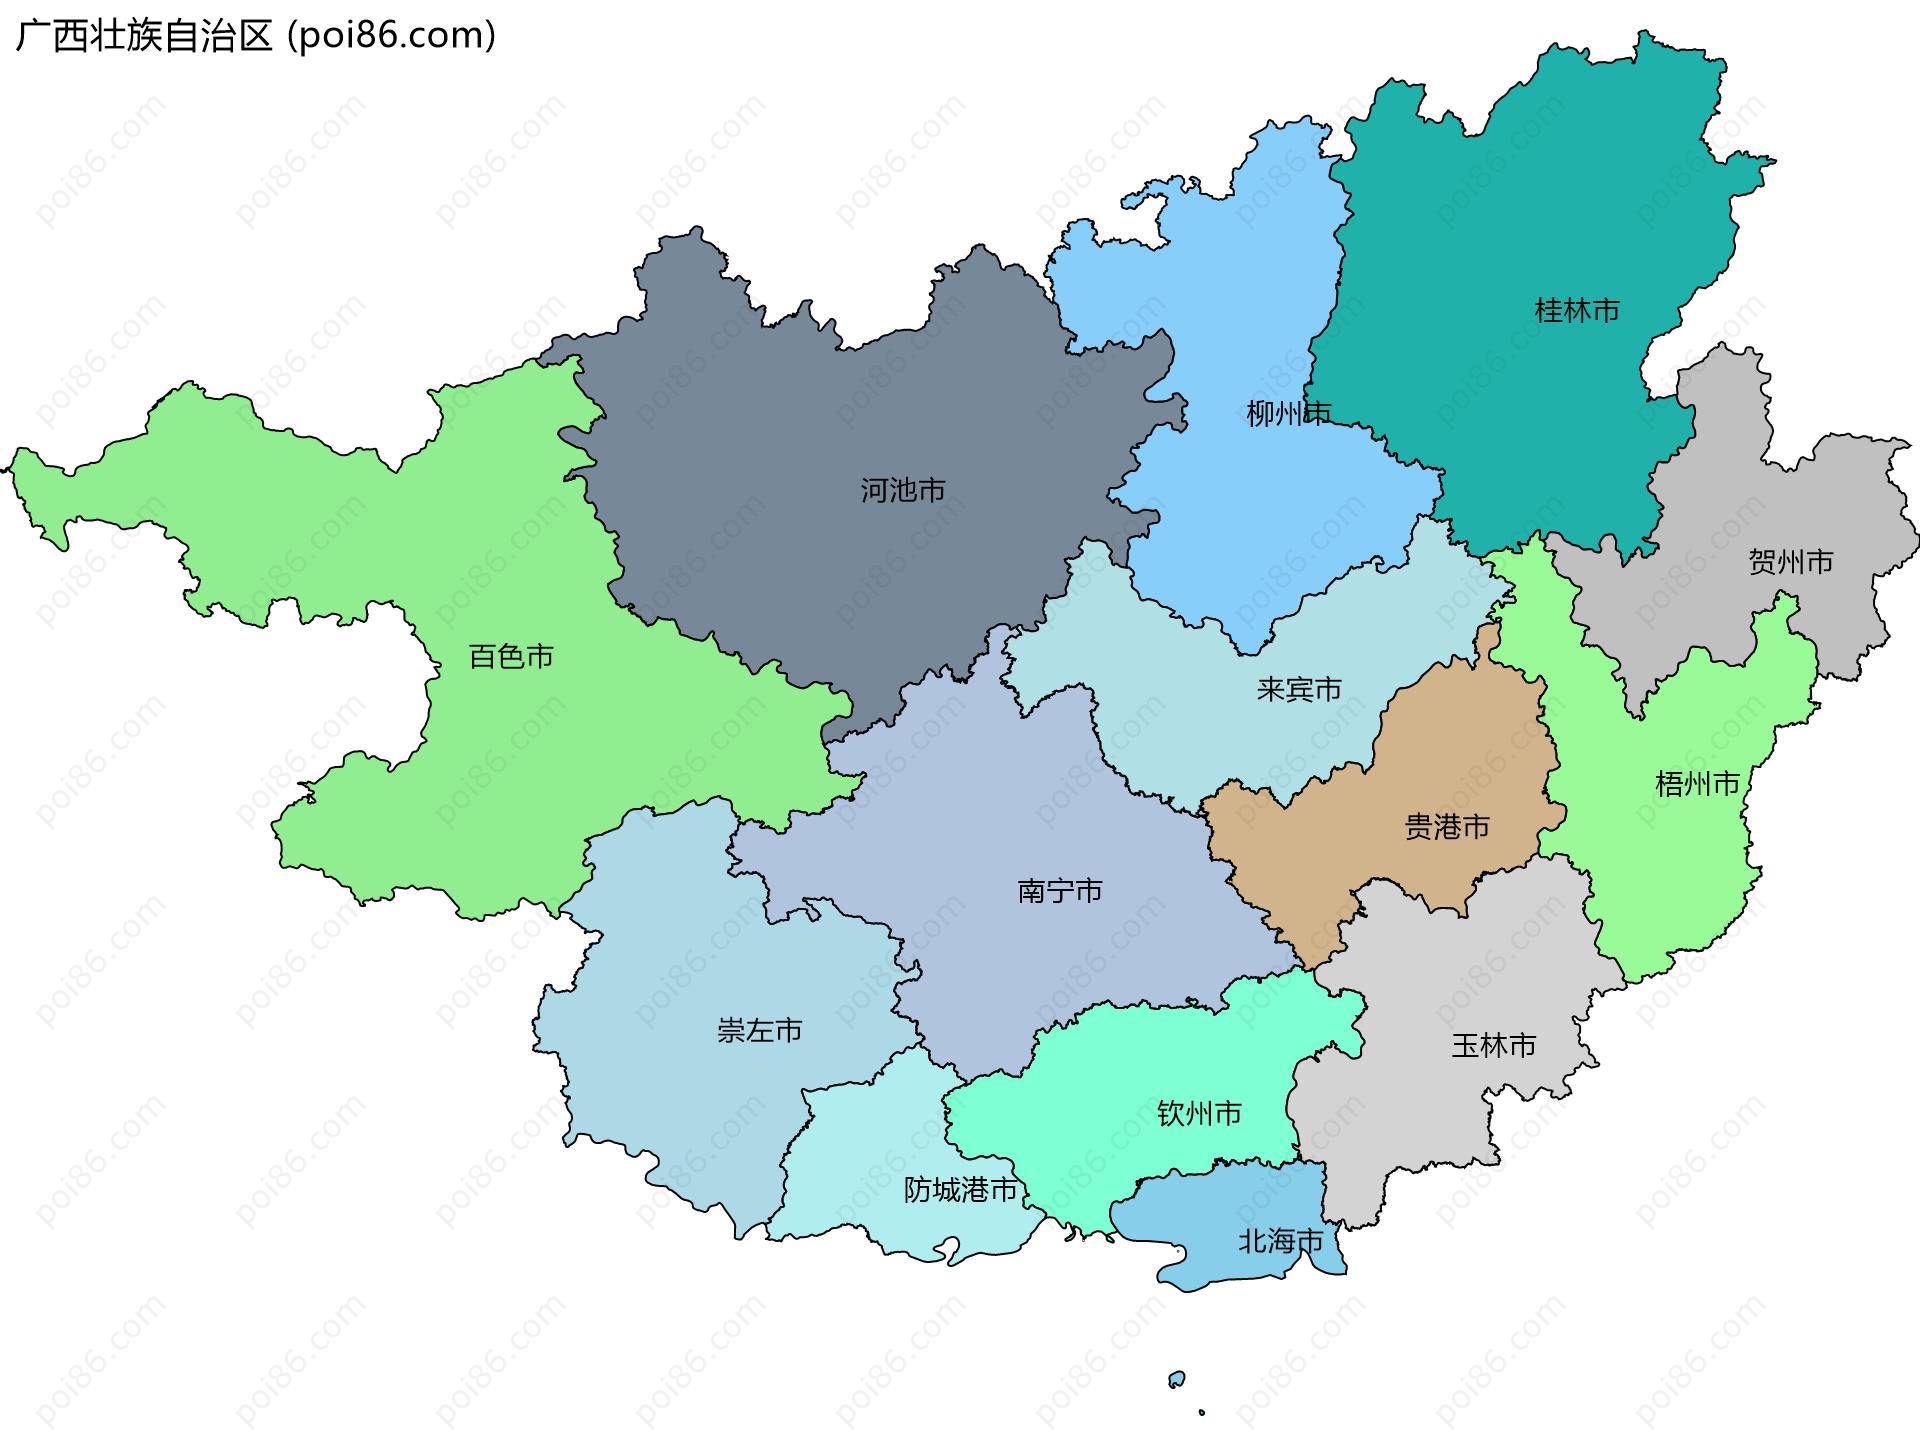 广西壮族自治区边界地图